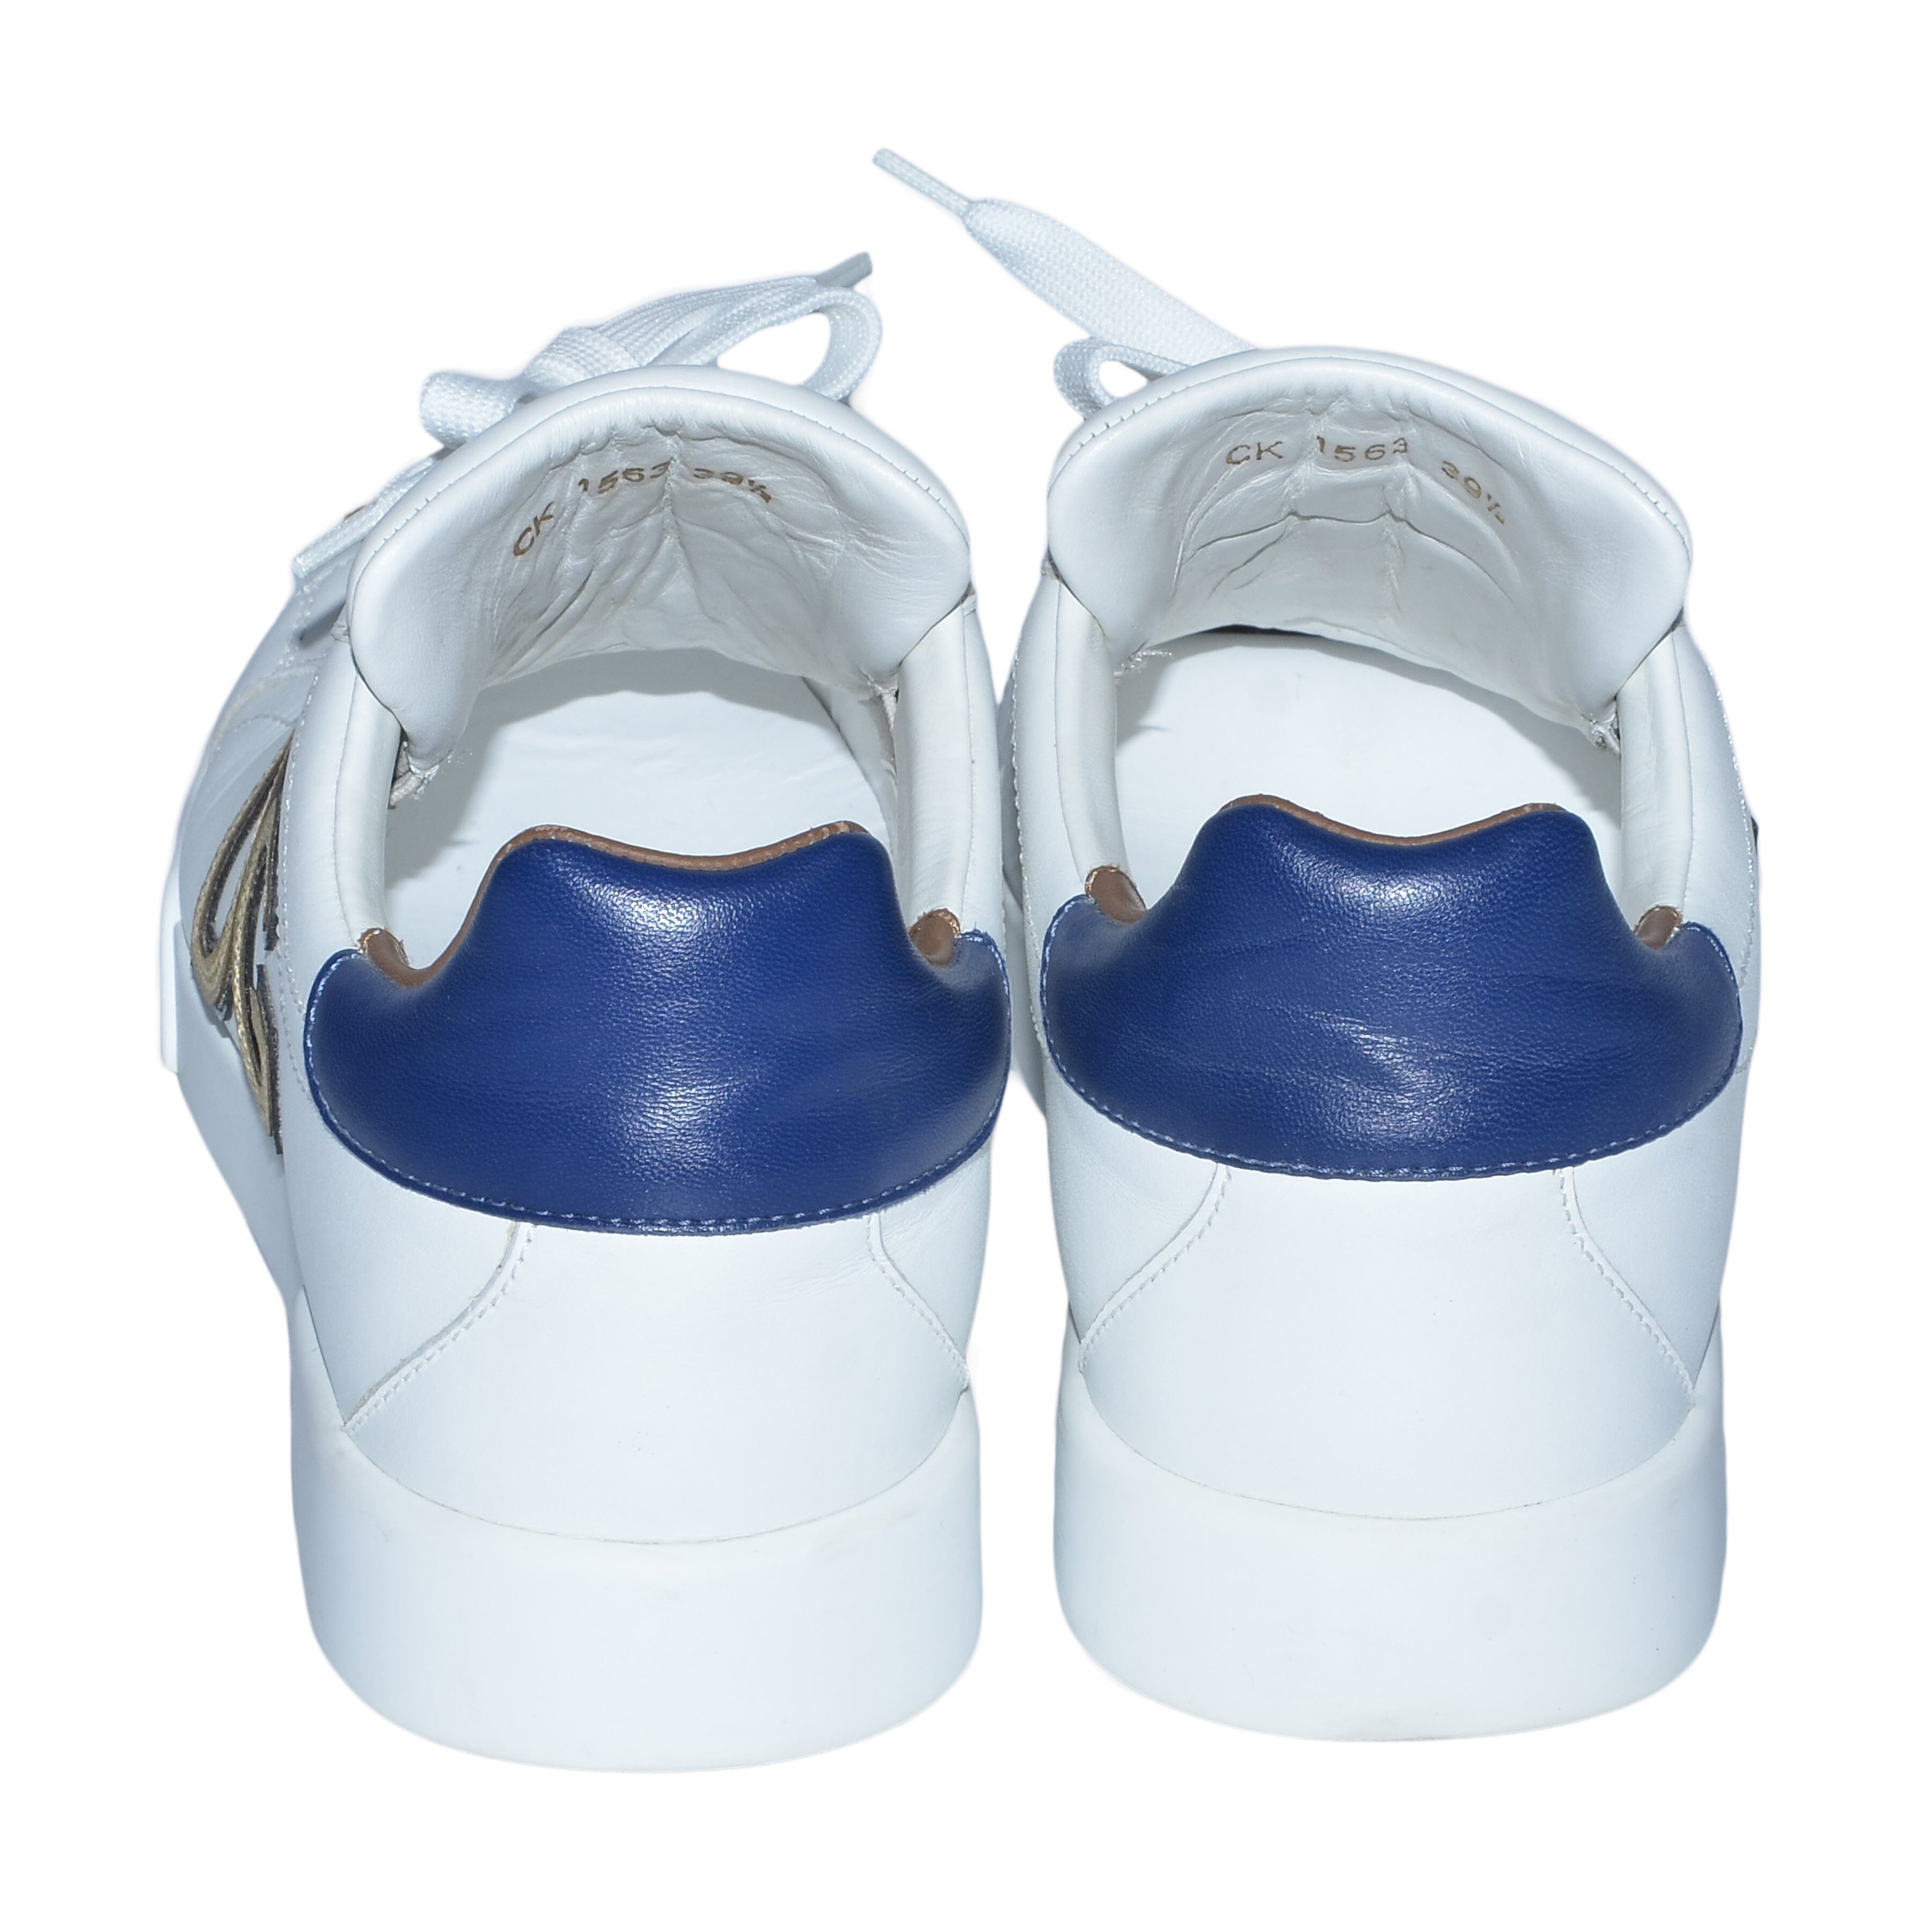 White/Multicolor DG-I-Heart Portofino Sneakers Shoes Dolce & Gabbana